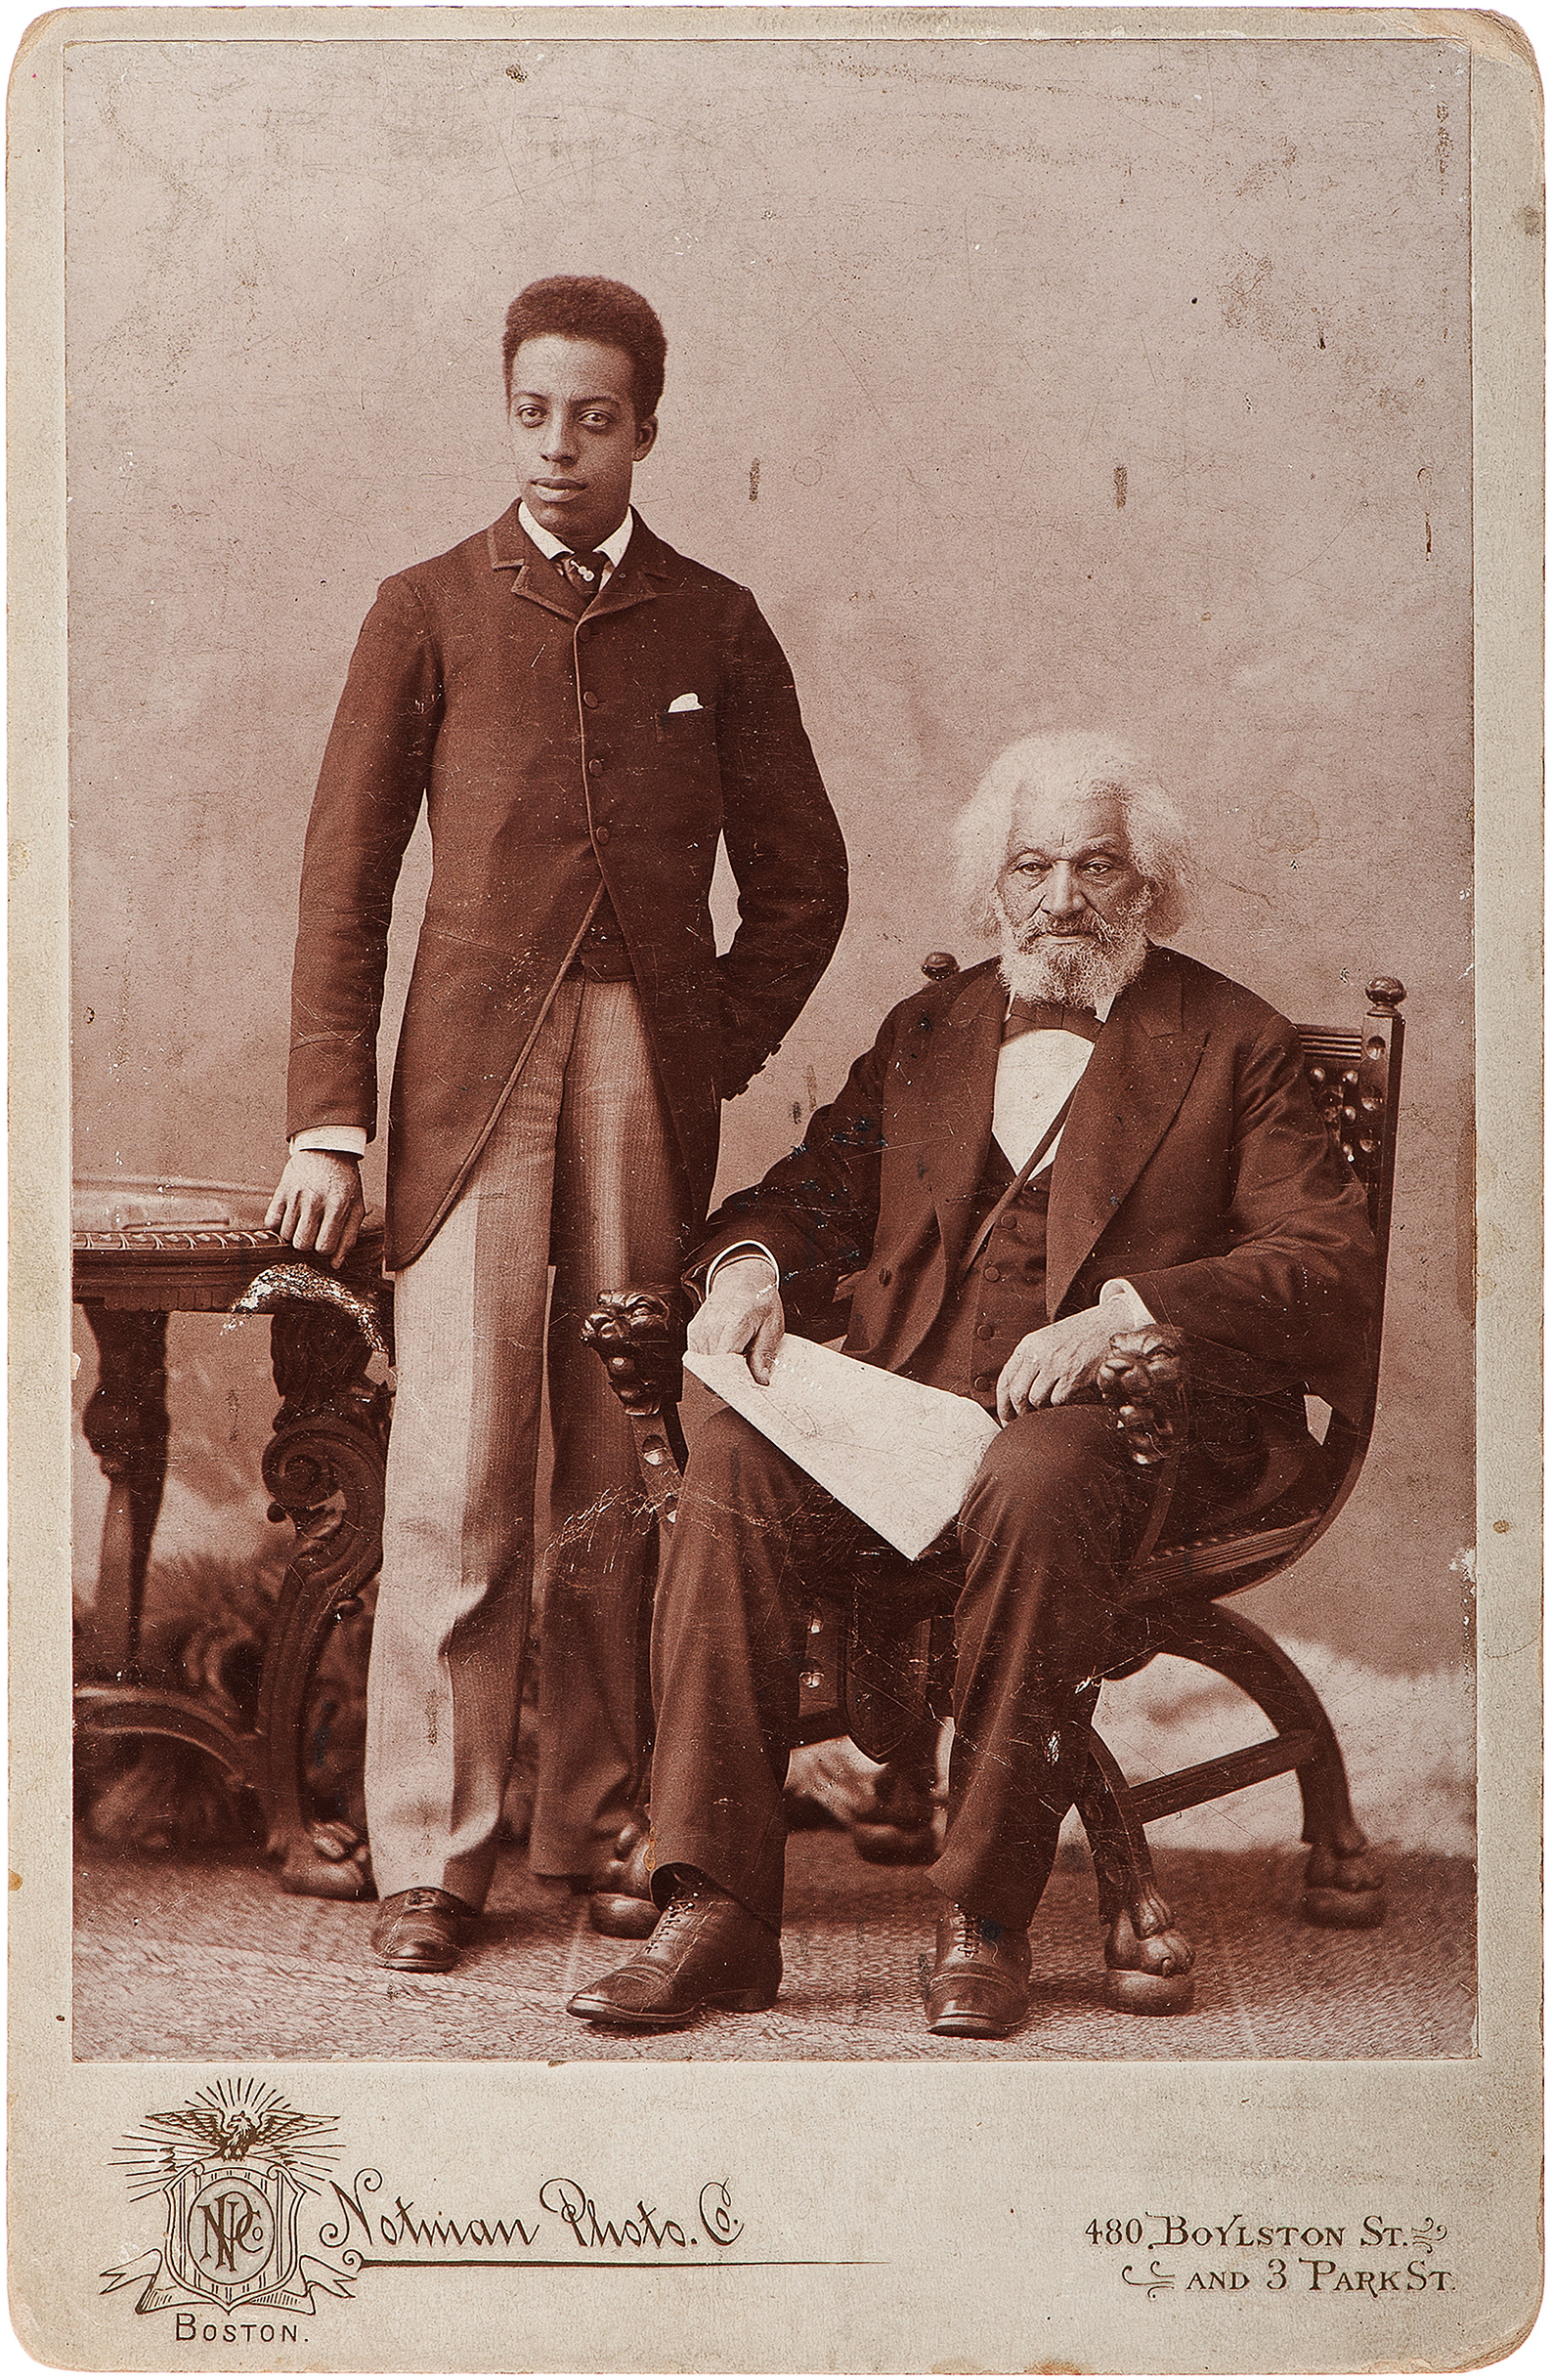 Frederick_Douglass_%26_grandson_Joseph%2C_c1890s.jpg